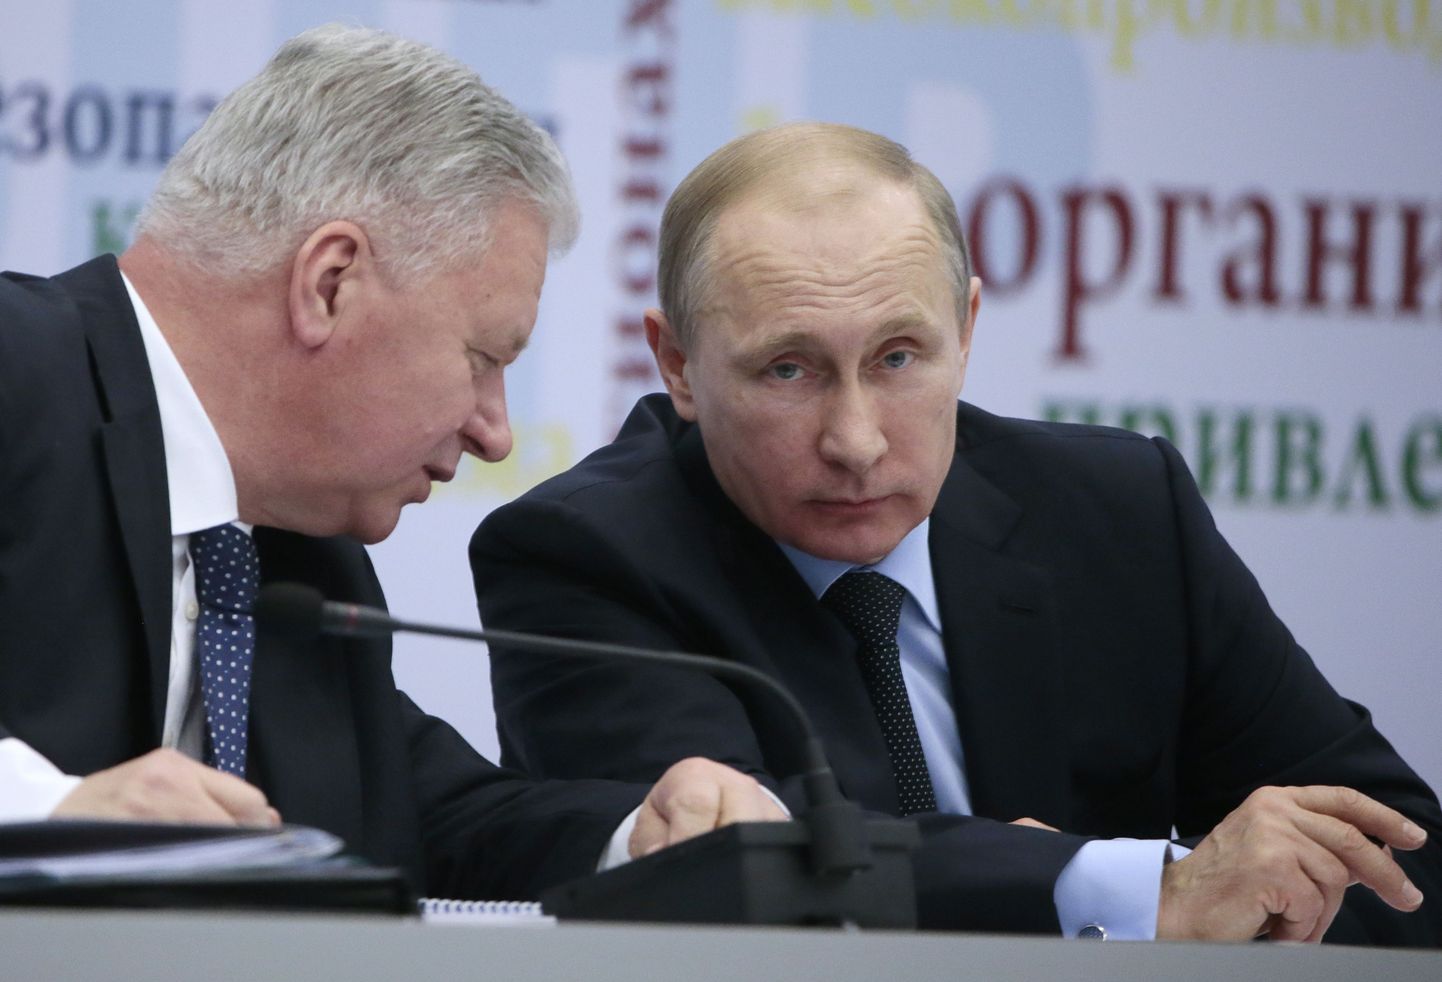 Vladimir Putin Venemaa ametiühingutegelaste ees esinemas.